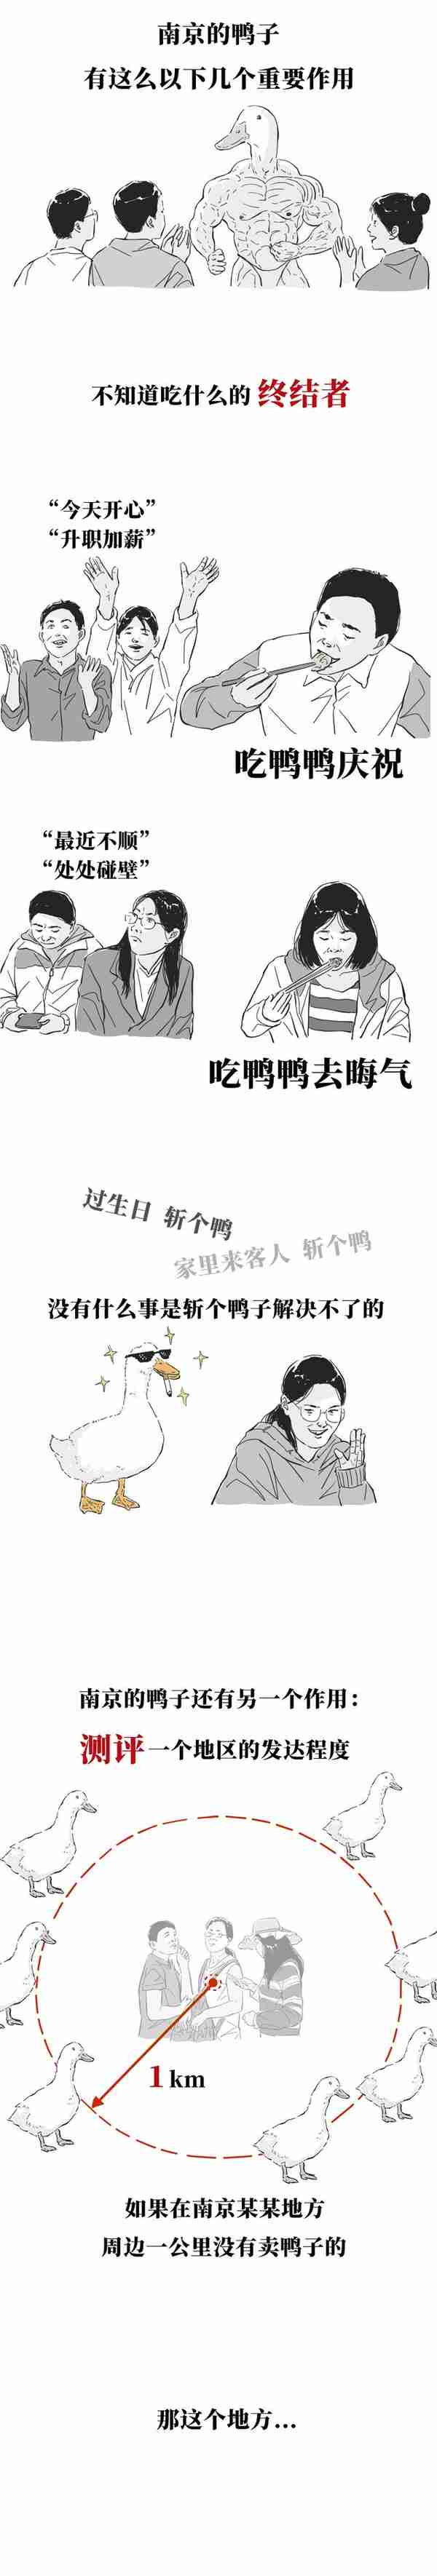 南京人为啥这么爱吃鸭？